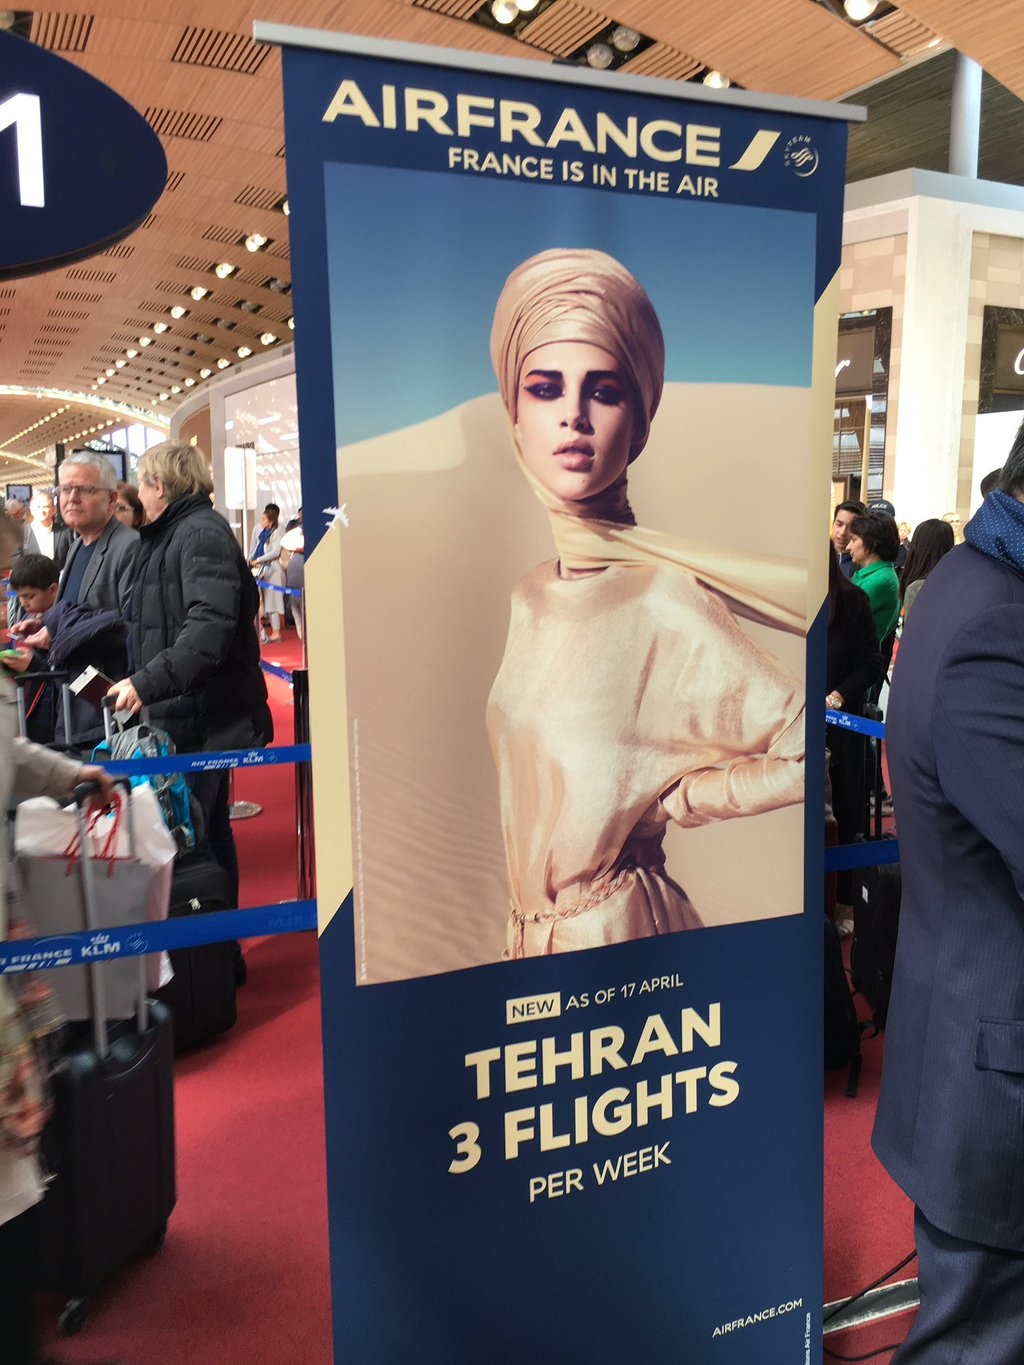 آگهی پرواز تهران و پاریس با تصویر زنی با حجاب/ عکس